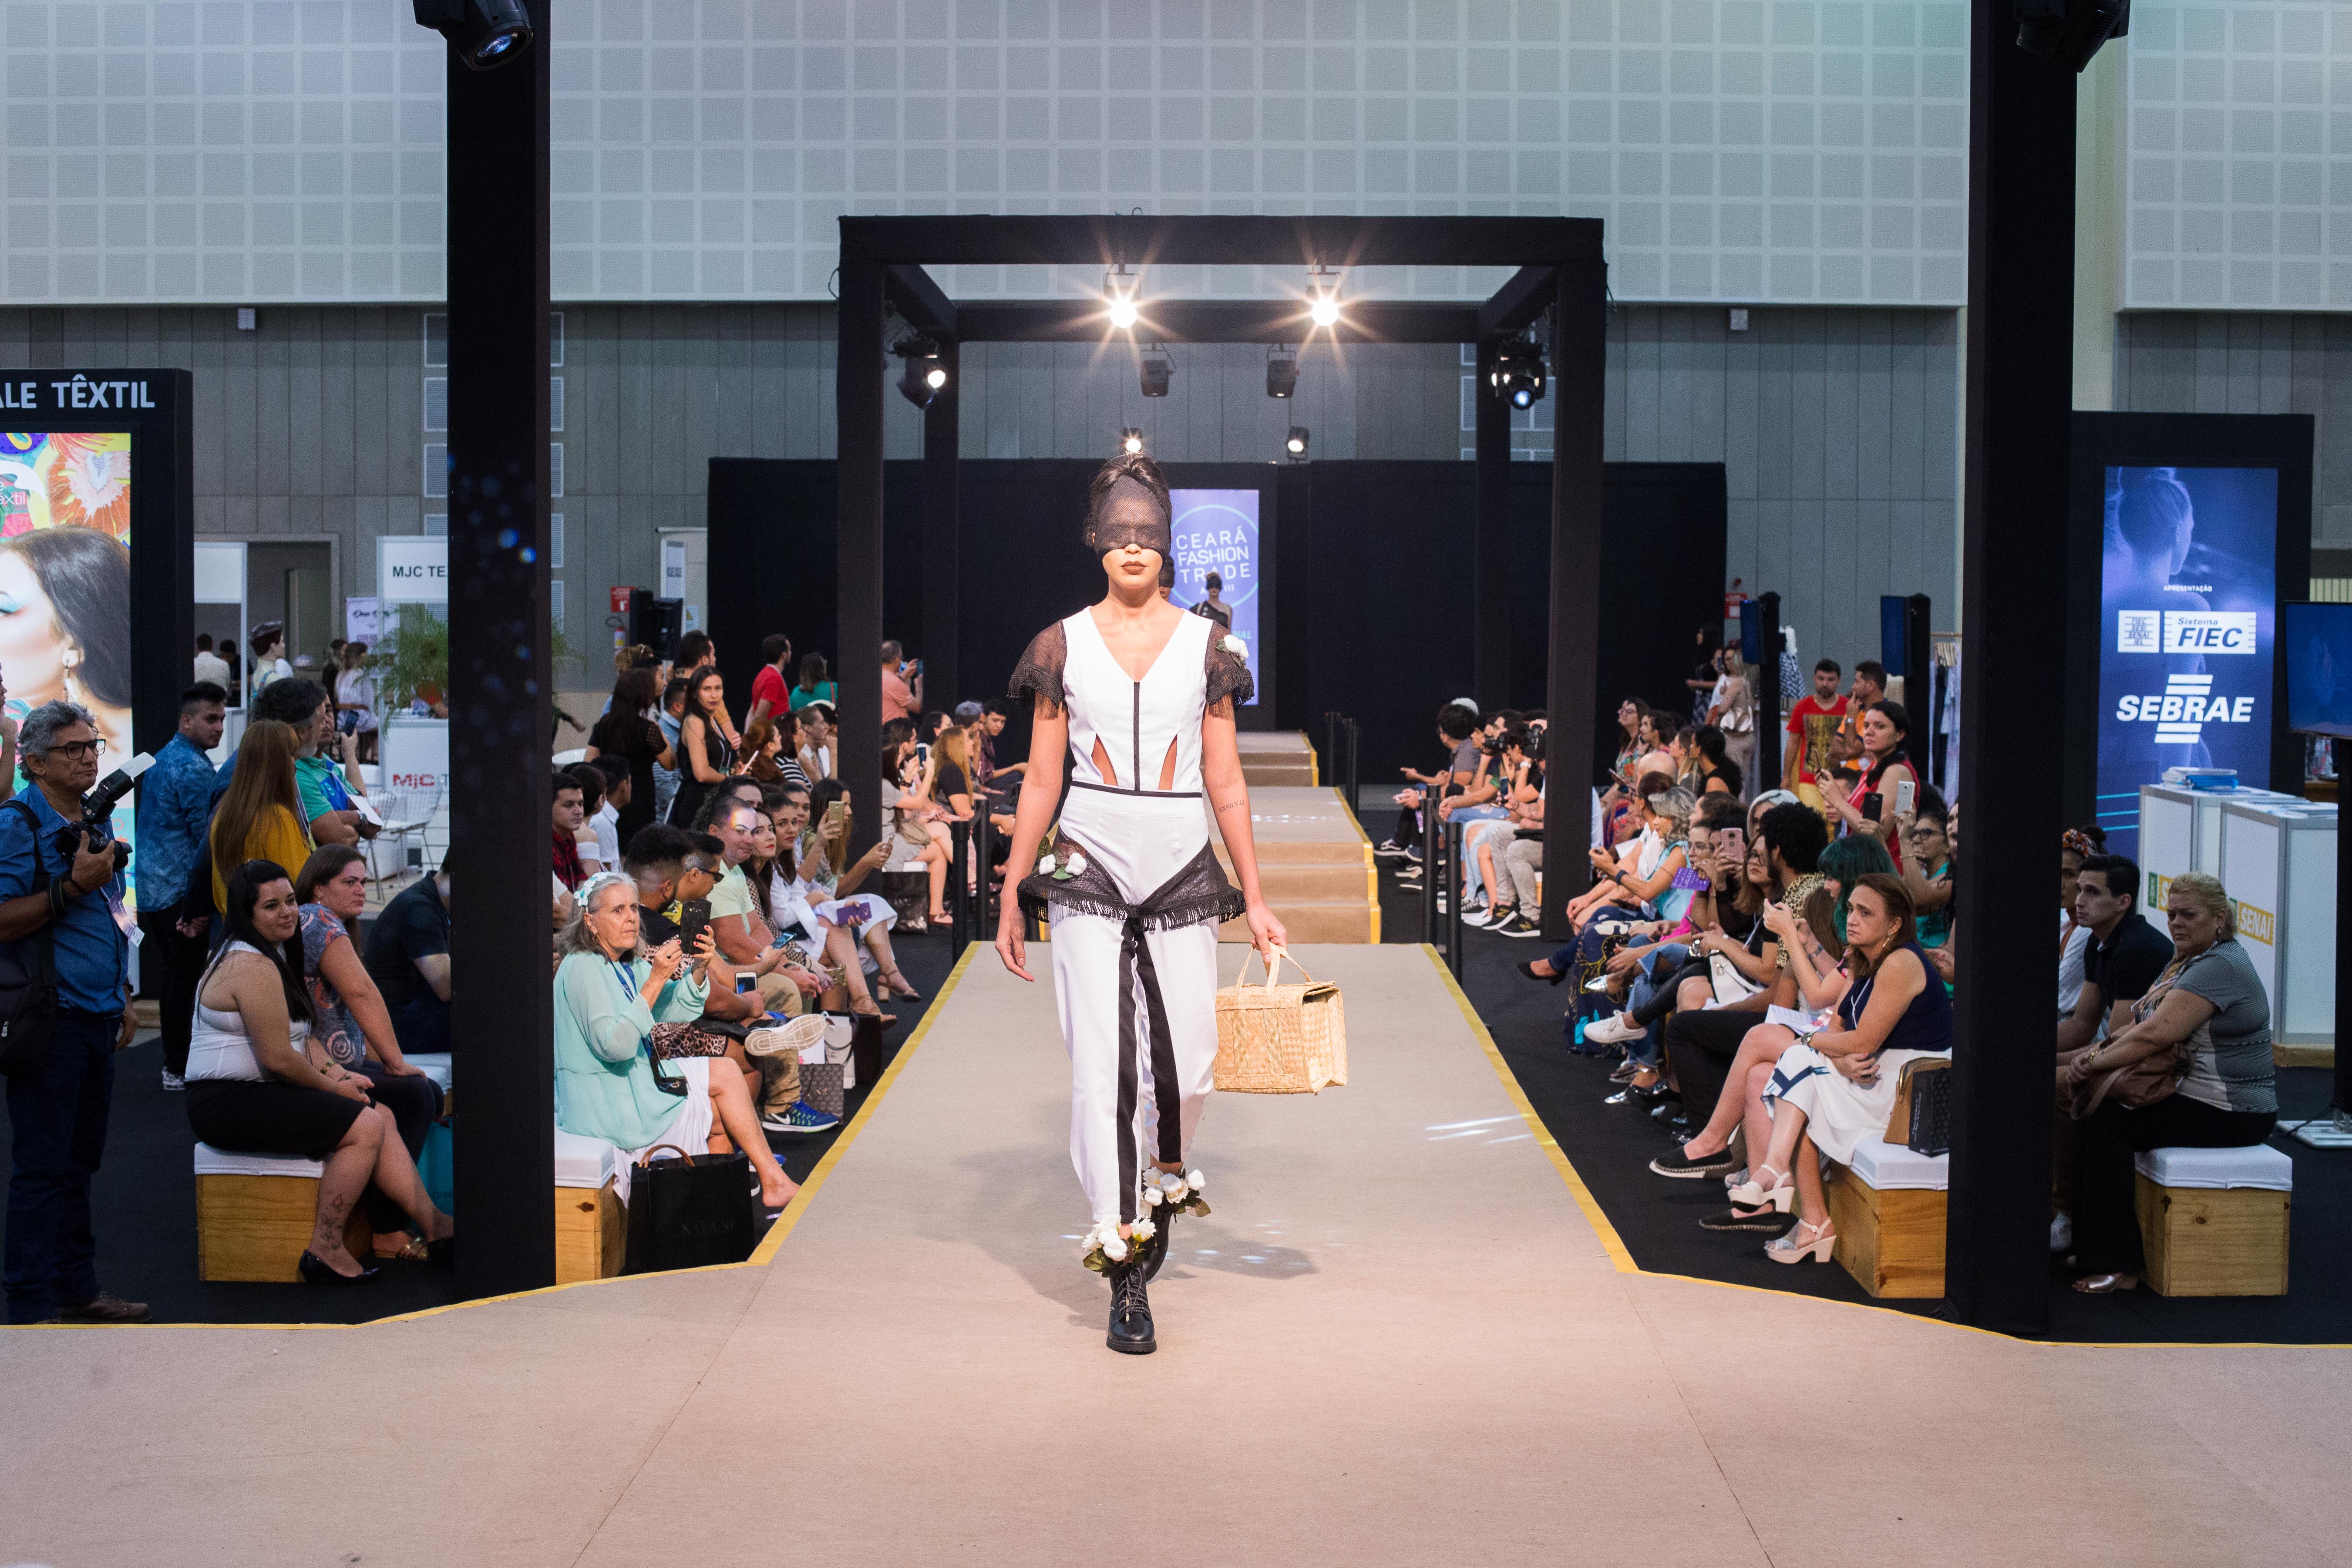 DFB Festival e Ceará Fashion Trade unem forças para impulsionar a indústria da moda cearense